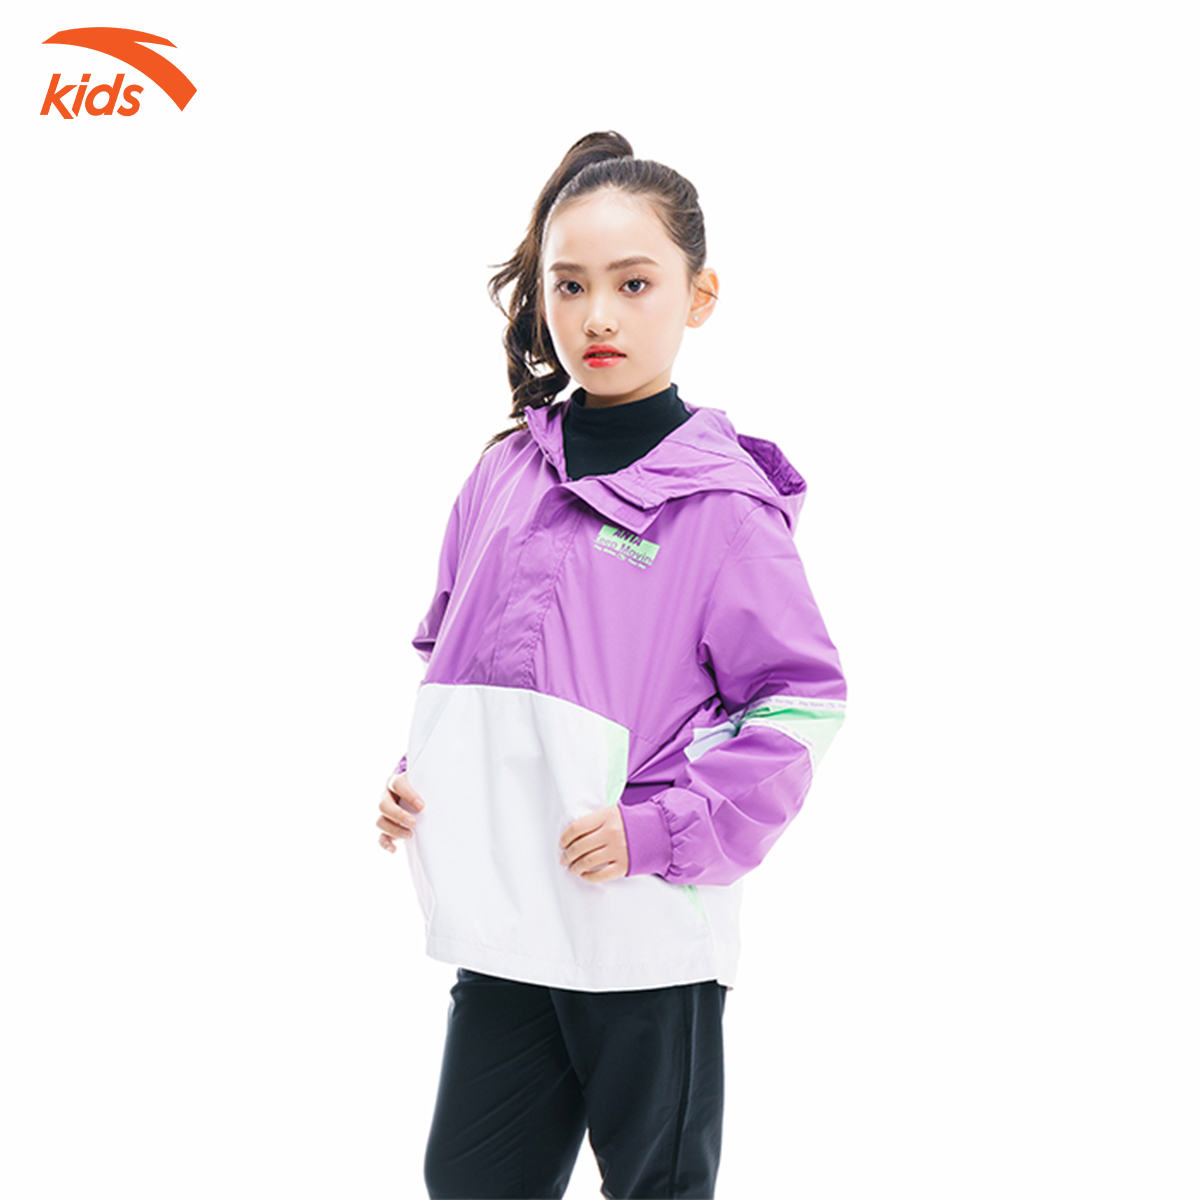 Áo khoác gió bé gái Anta Kids 362017611-5, dáng áo hoodie, có túi gấp gọn bên trong áo